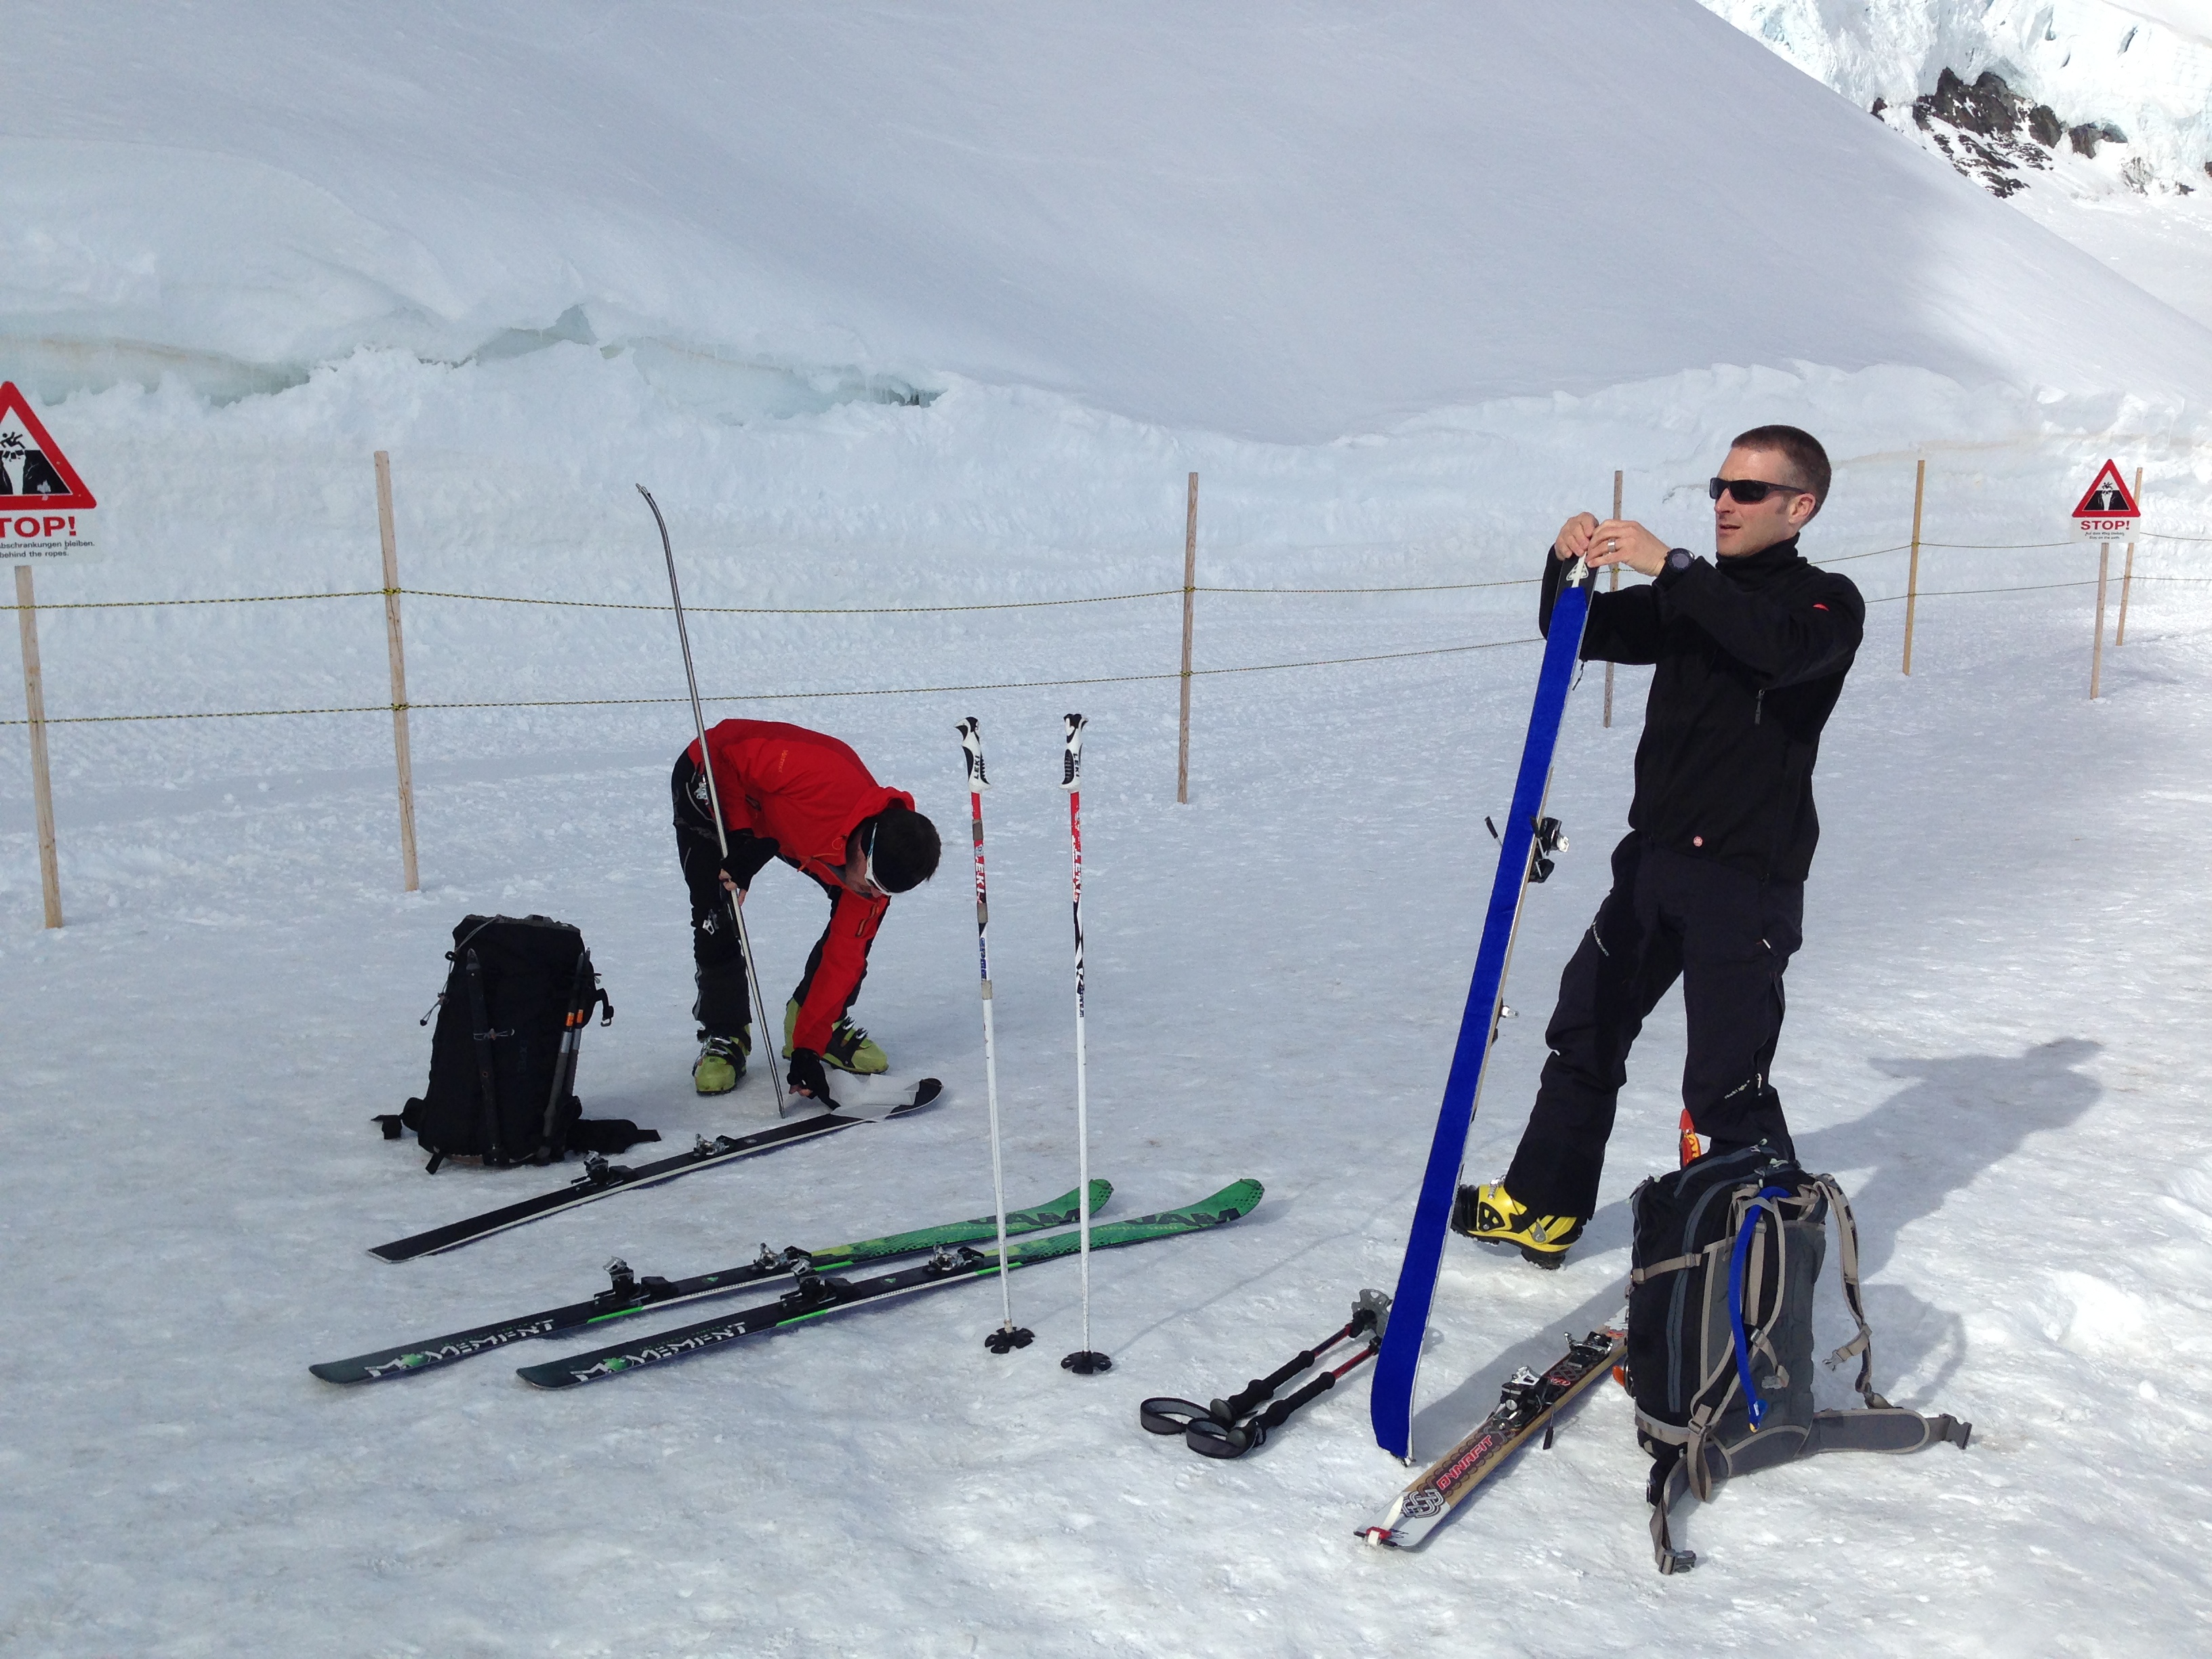 Hochgebirgsskitouren im Jungfraugebiet 30.3. – 3.4.14